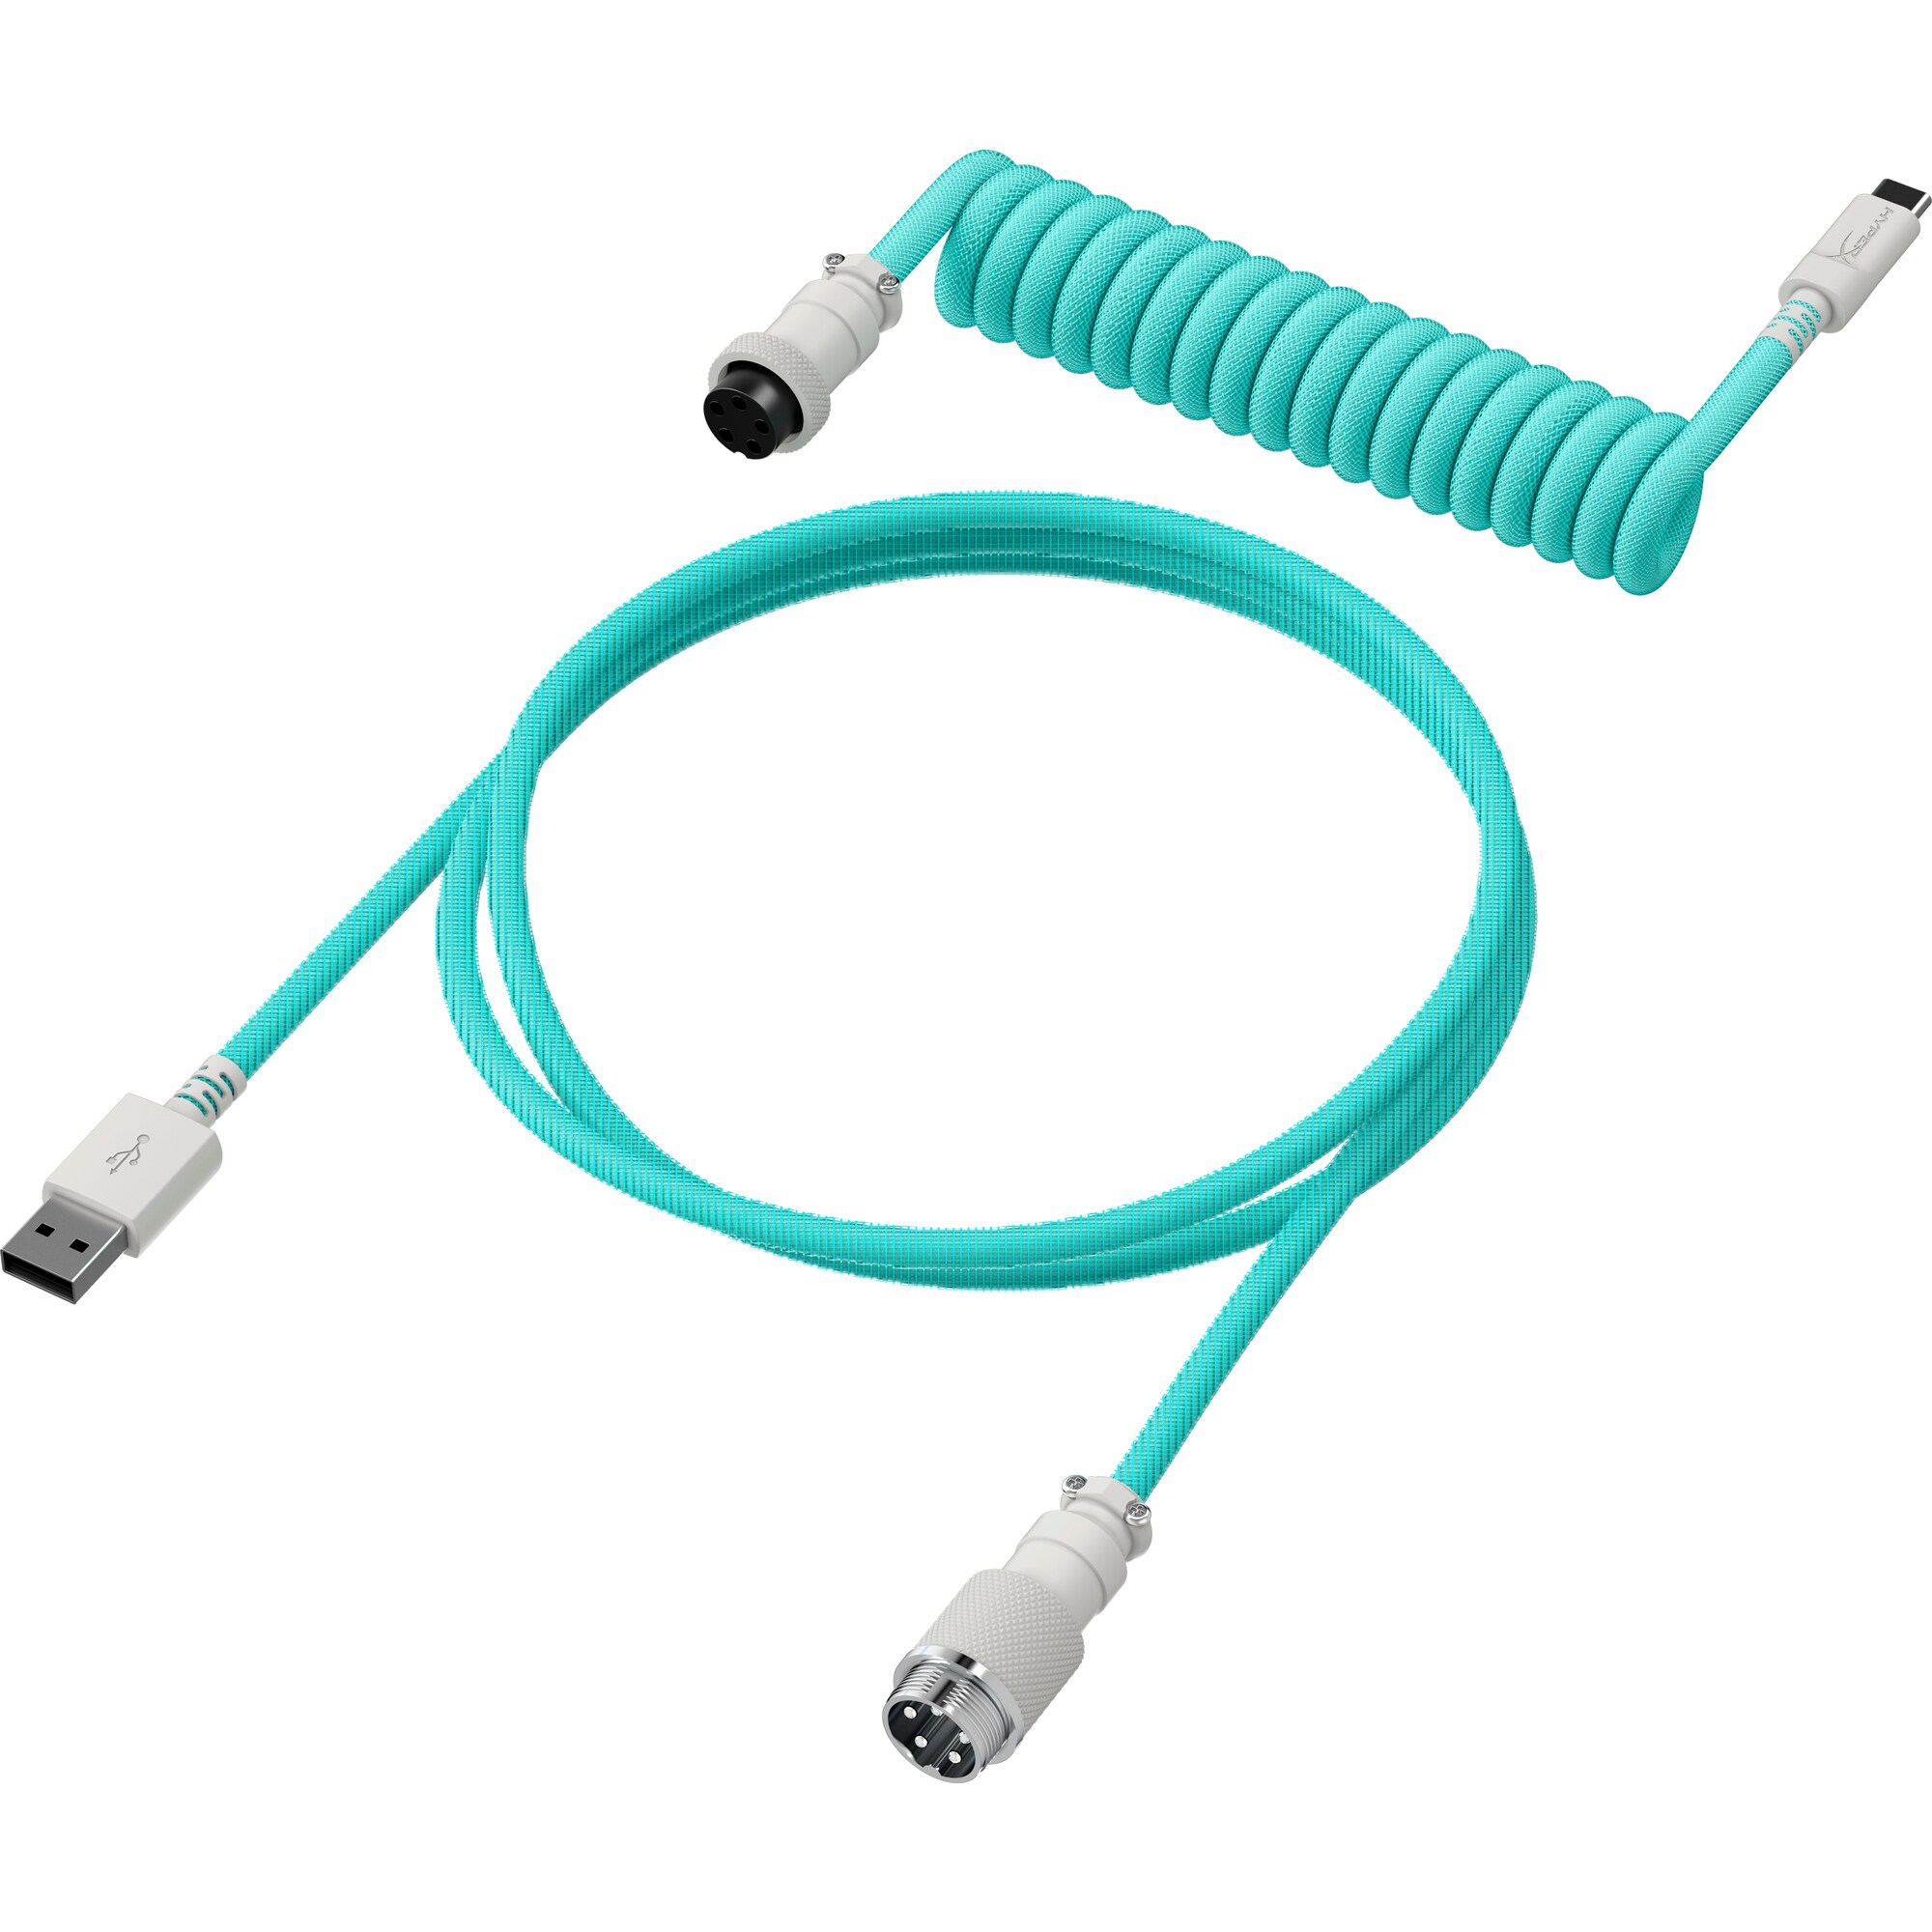 HyperX USB-C Coiled Cable Light Green-White - Příslušenství ke klávesnici3 